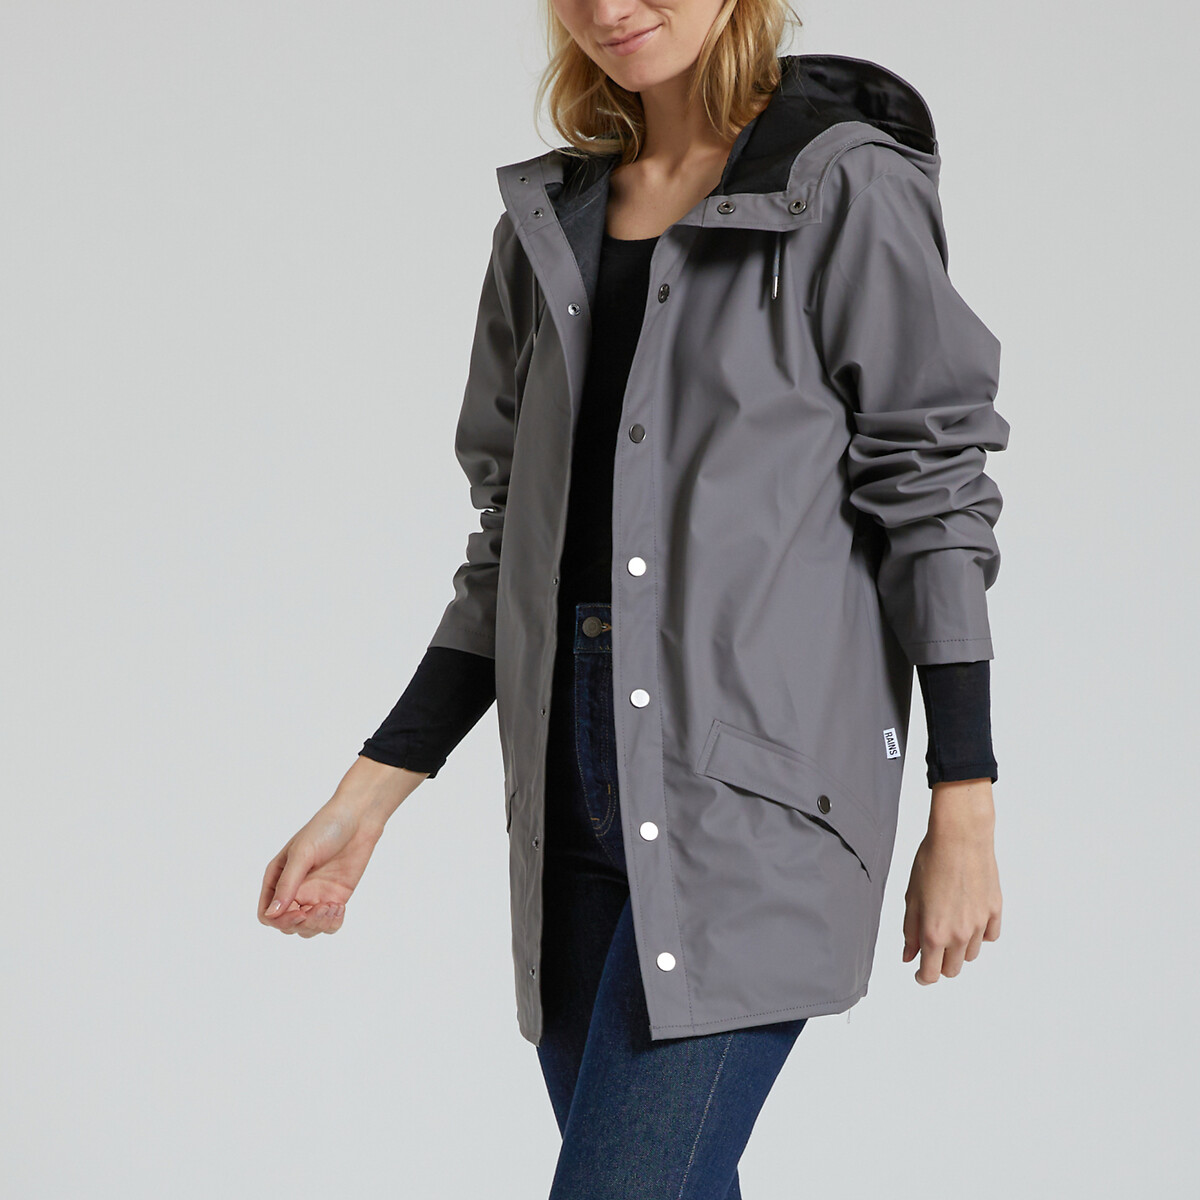 Unisex Waterproof Hooded Jacket with Zip Fastening